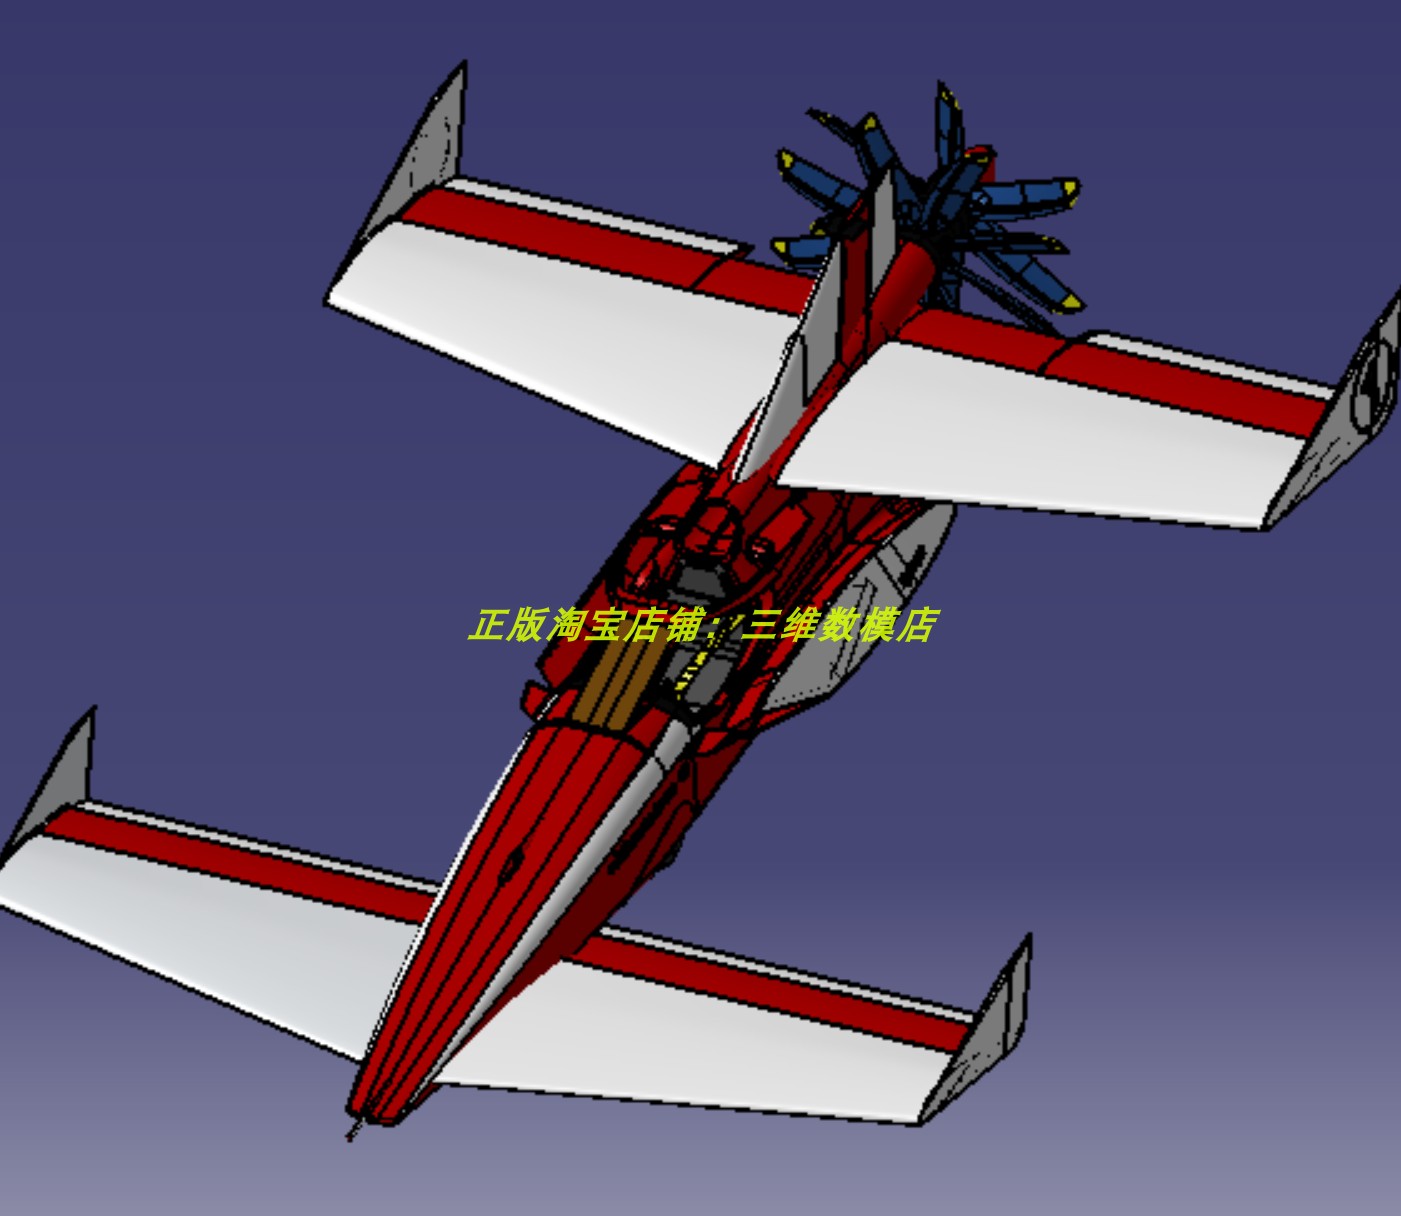 单座椅活塞发动机高速螺旋桨飞机FF1方程式飞行器 3D三维几何模型